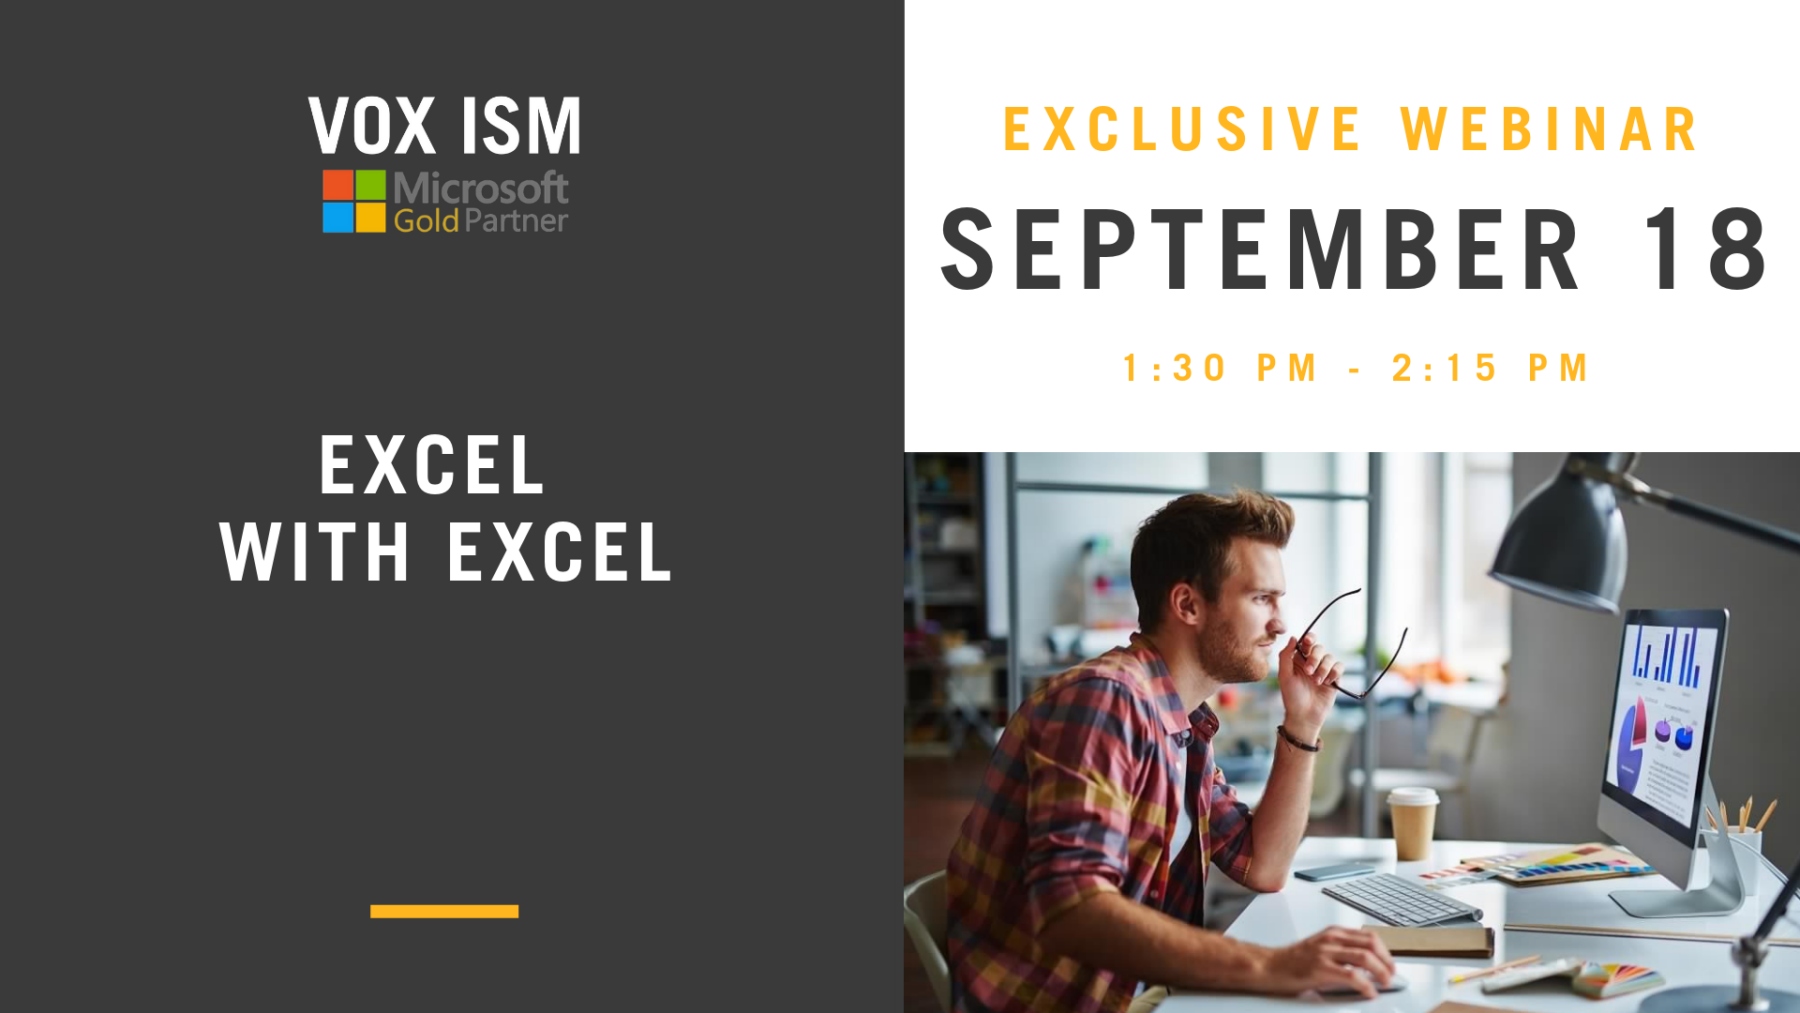 Excel with Excel - September 18 - Webinar - VOX ISM